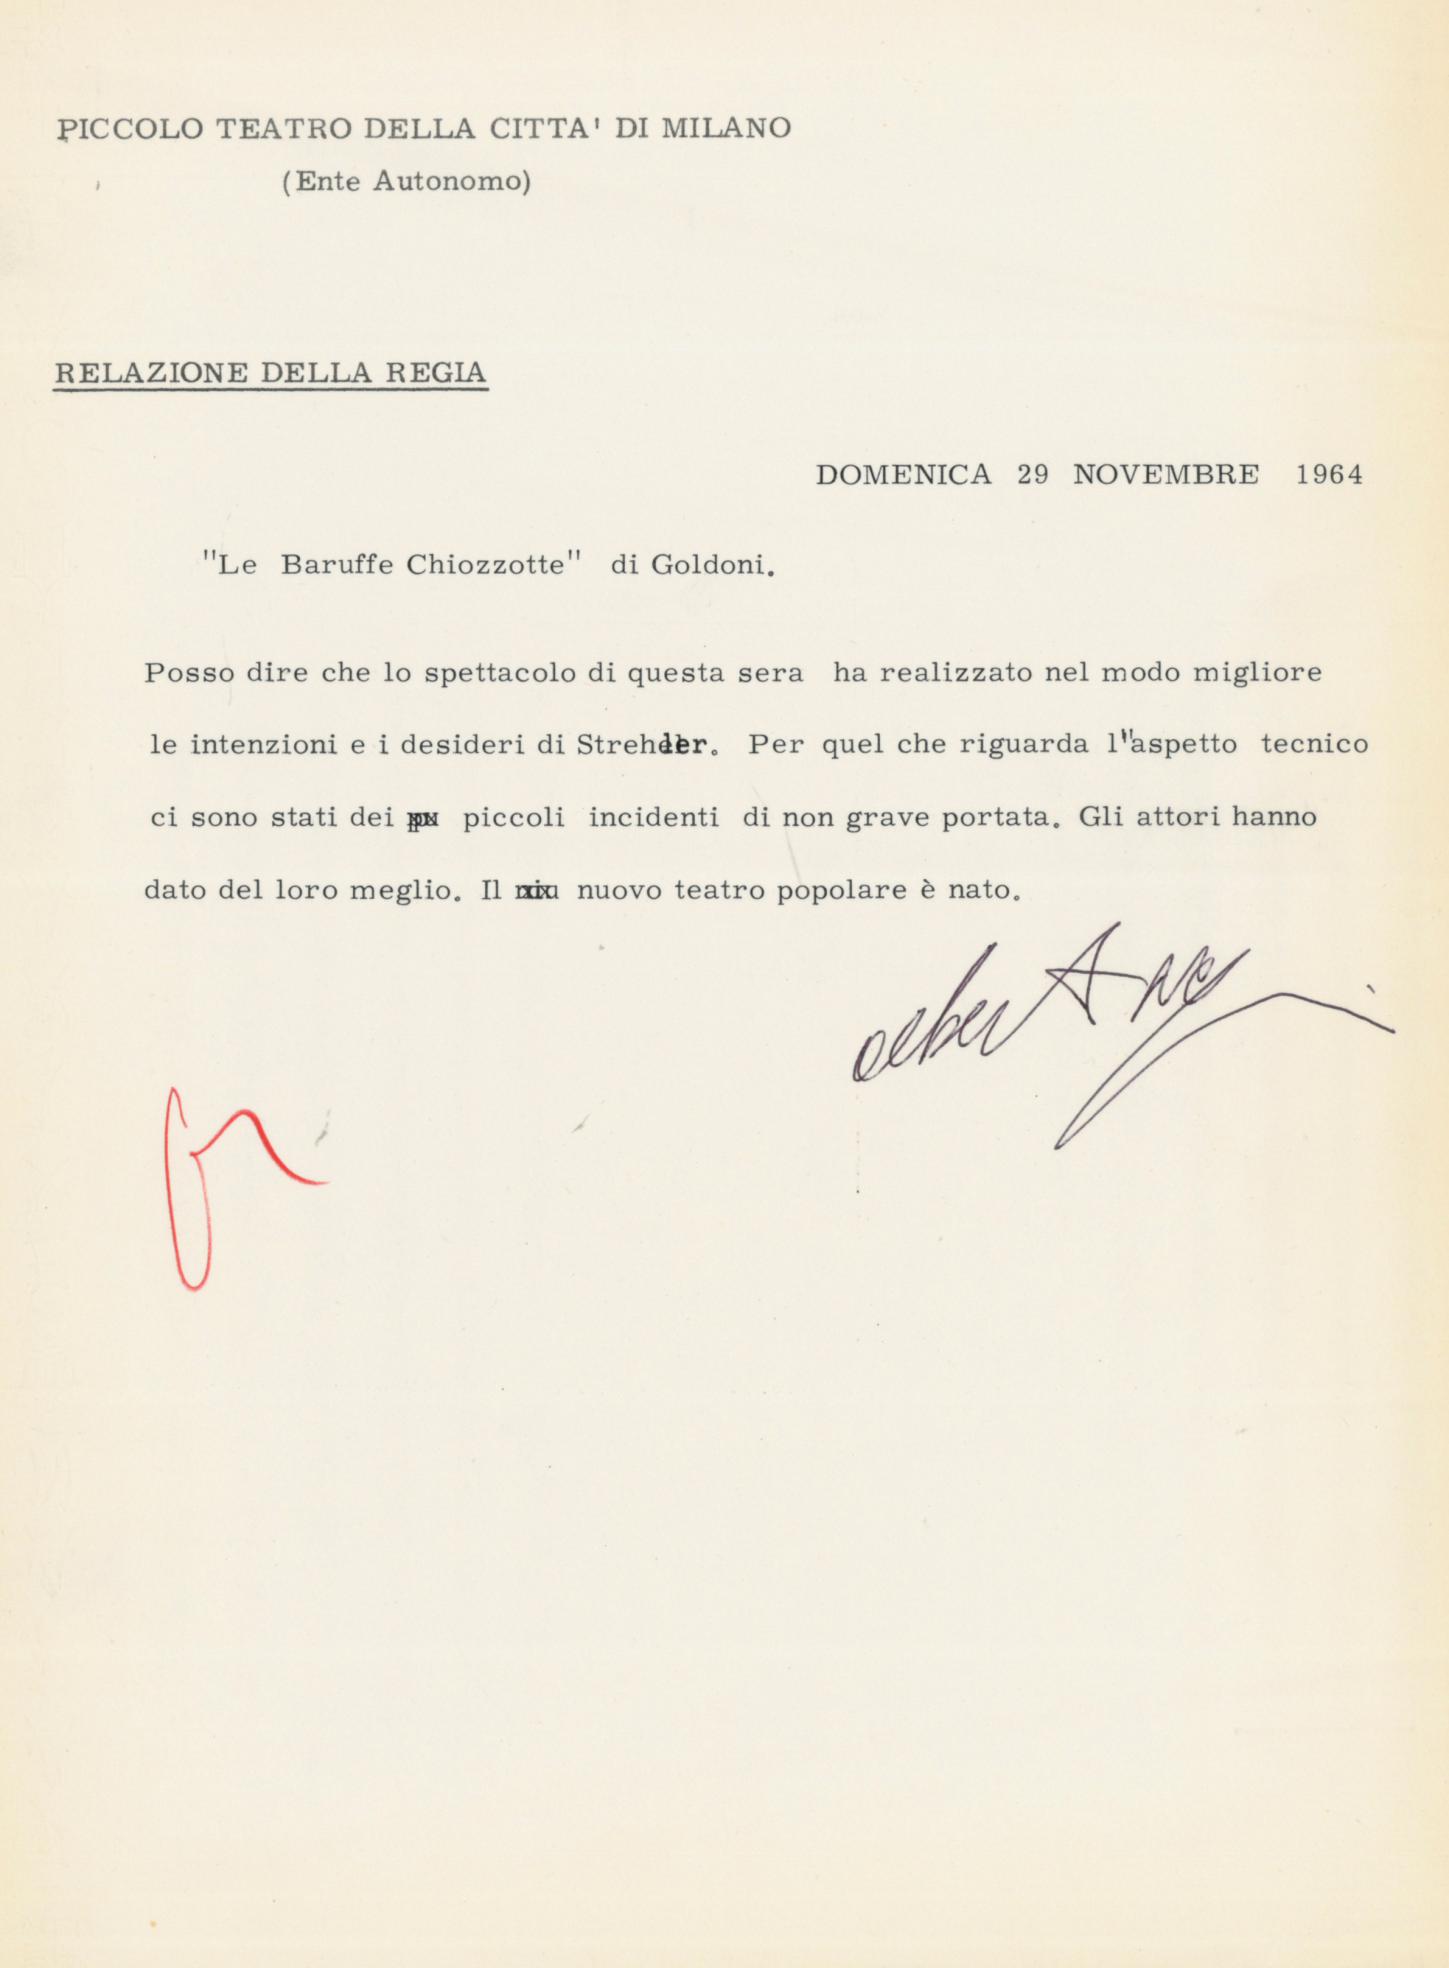 29 novembre 1964: relazione della regia dopo il debutto - Archivio Piccolo Teatro di Milano